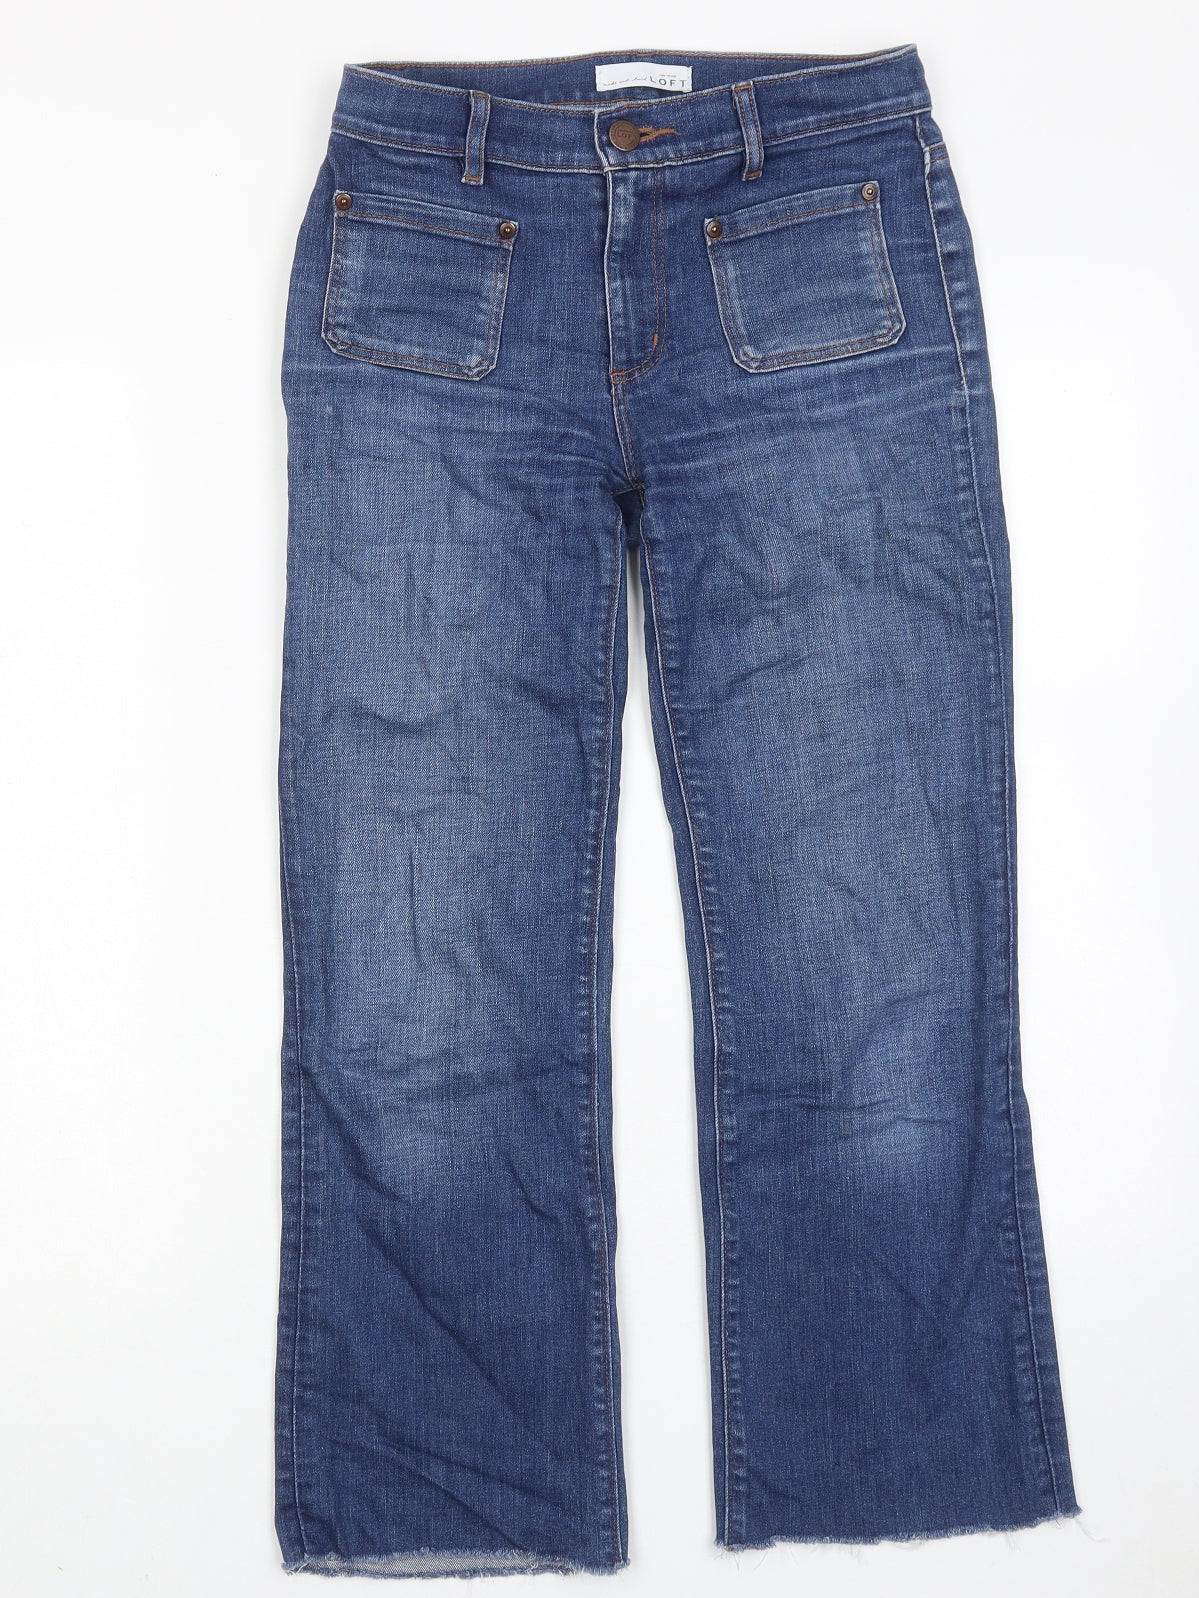 LOFT Womens Blue Cotton Wide-Leg Jeans Size 26 in Regular Zip